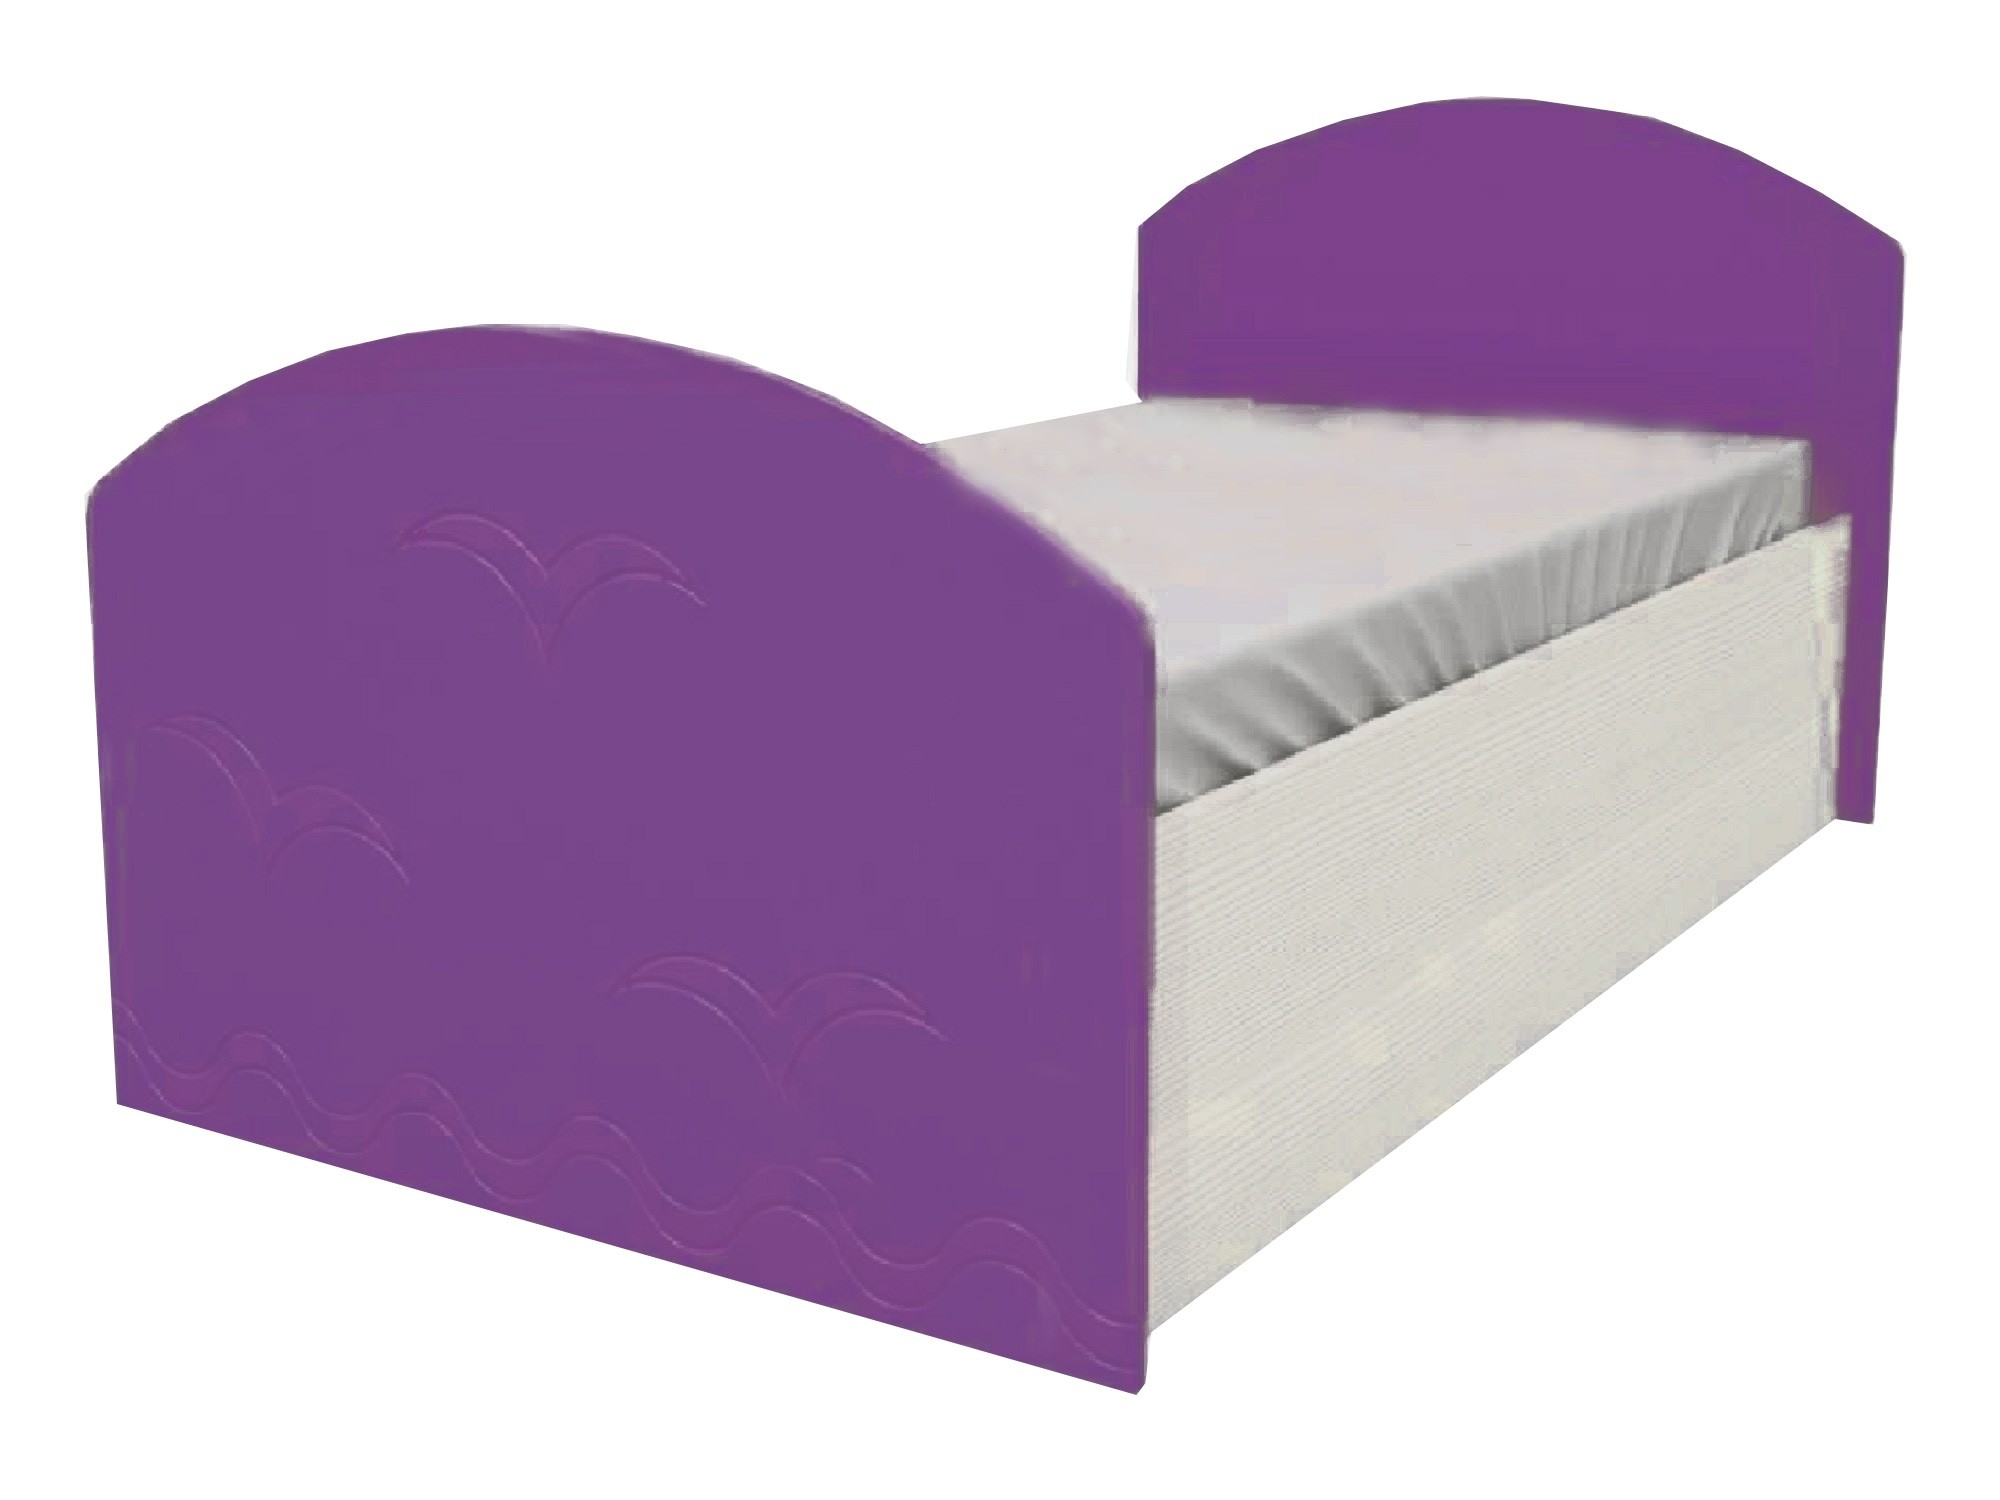 Юниор-2 Детская кровать 80, металлик (Фиолетовый металлик, Дуб белёный) Дуб белёный, МДФ, ЛДСП юниор 2 комод металлик фиолетовый металлик дуб белёный фиолетовый металлик мдф лдсп